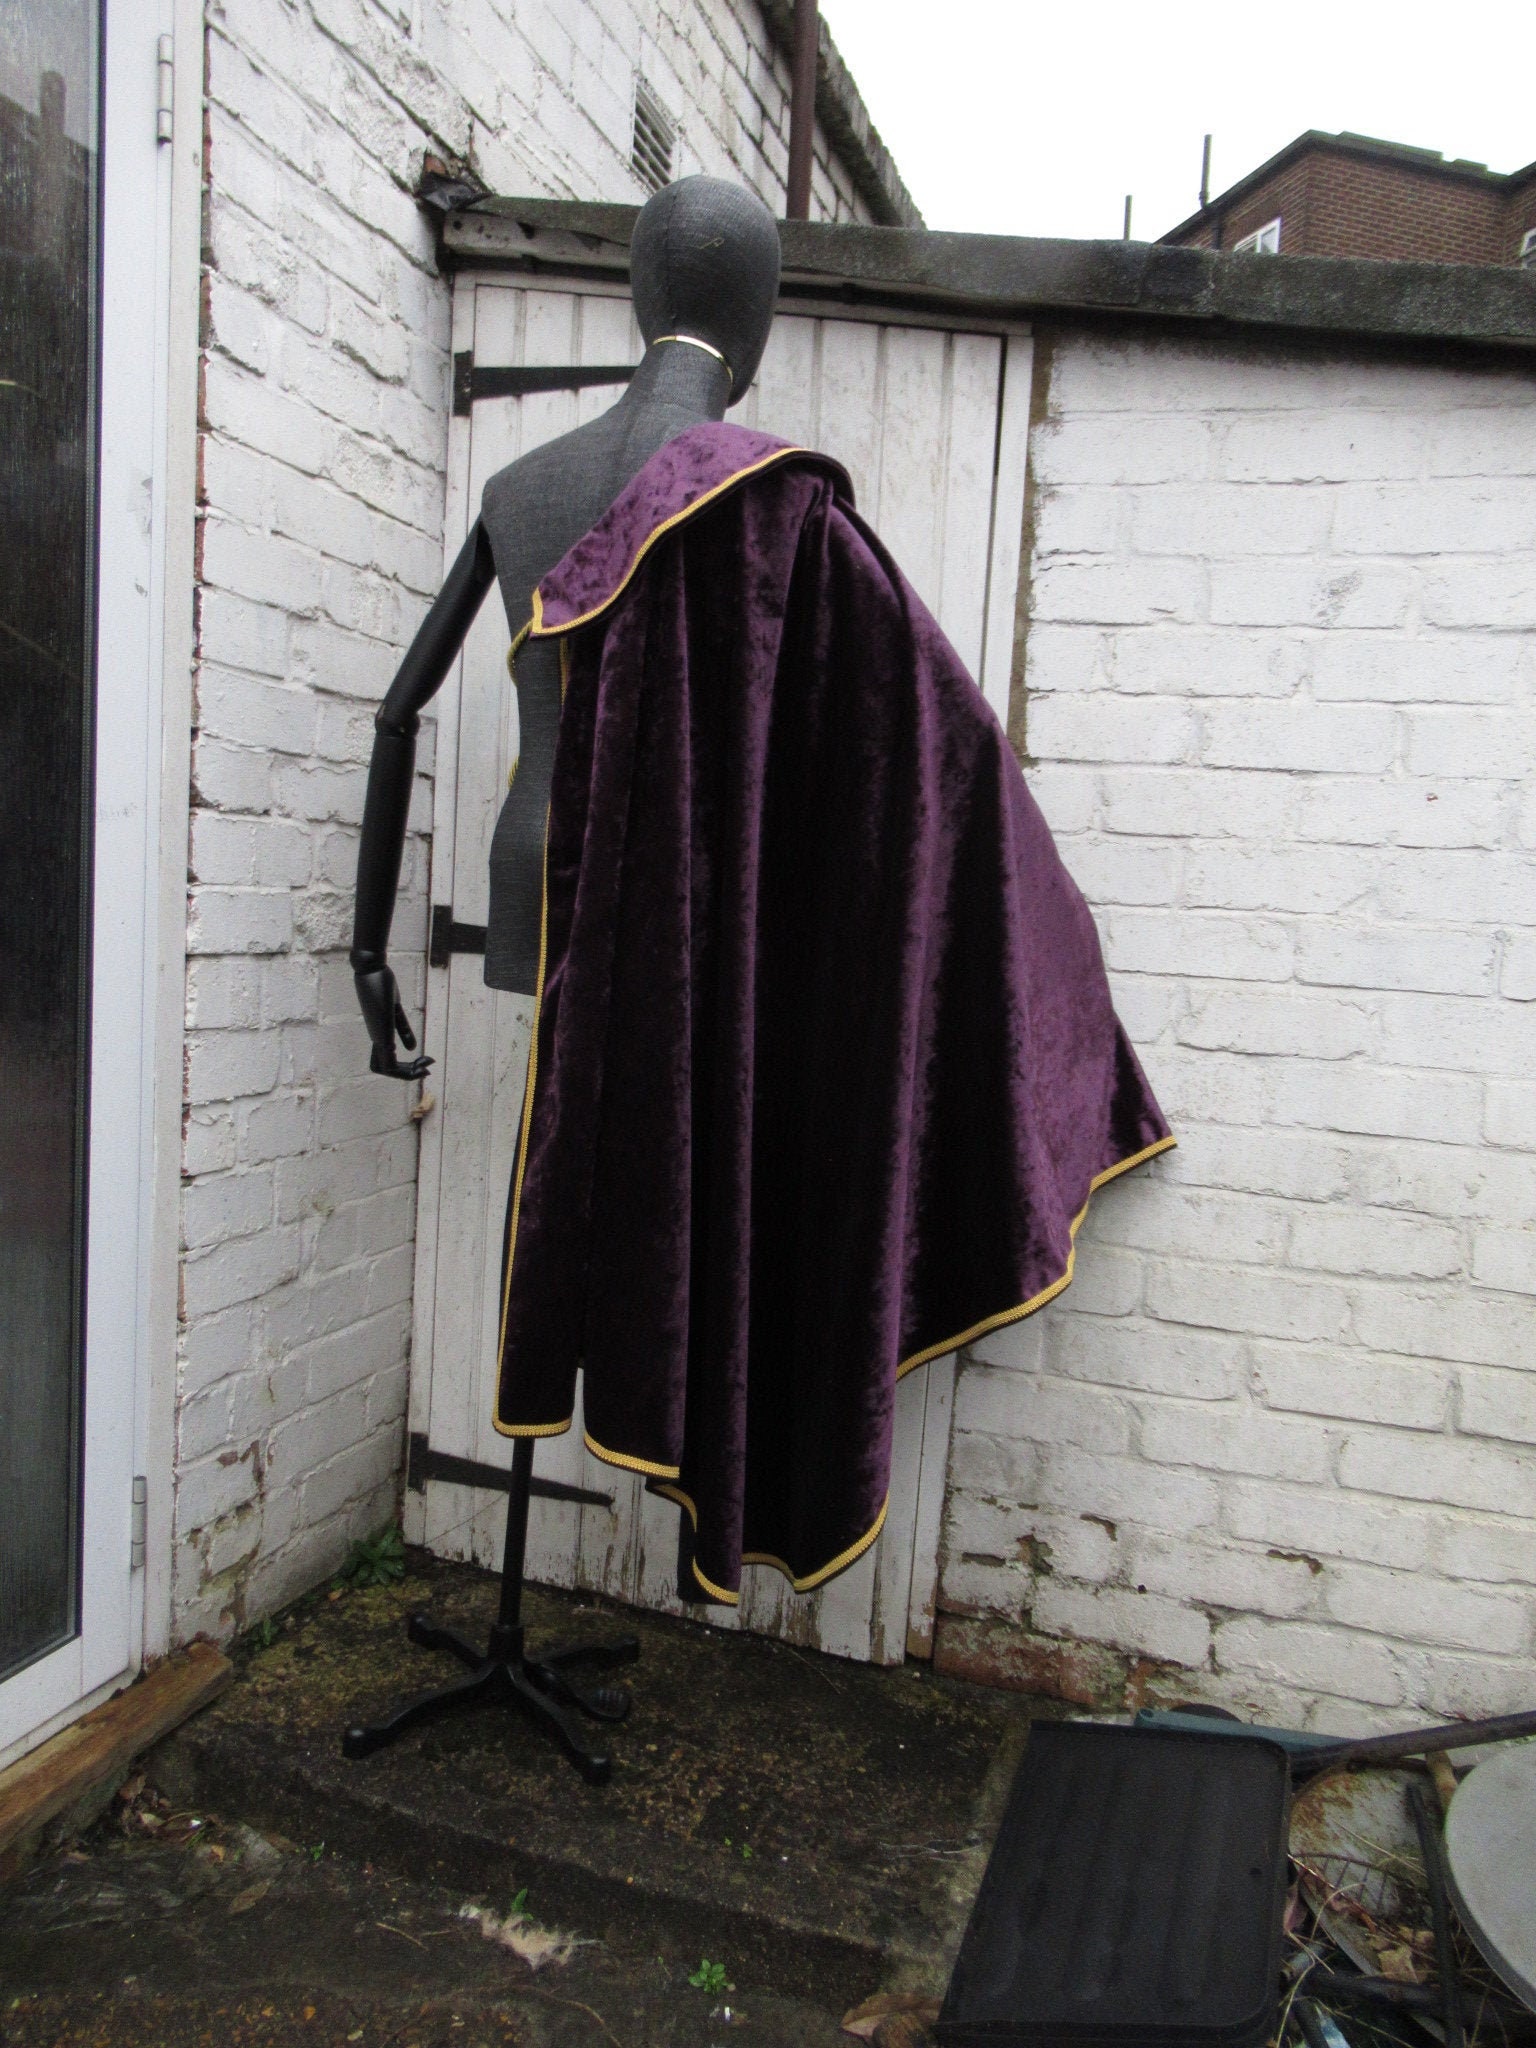 Medieval cloak with shoulder cape